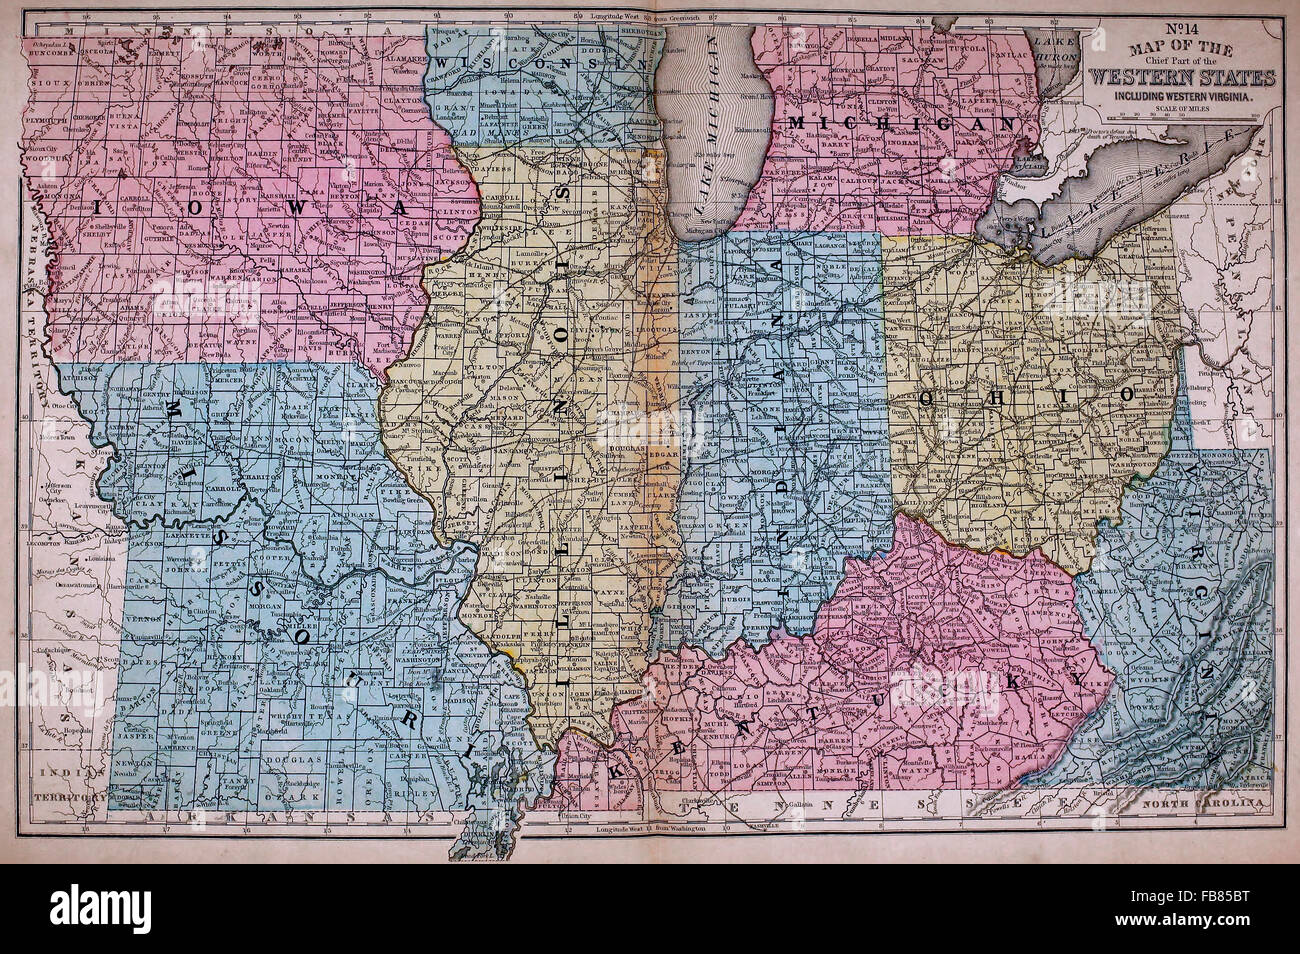 La carte des États de l'Ouest - États-Unis Amérique du Nord, vers 1861 Banque D'Images